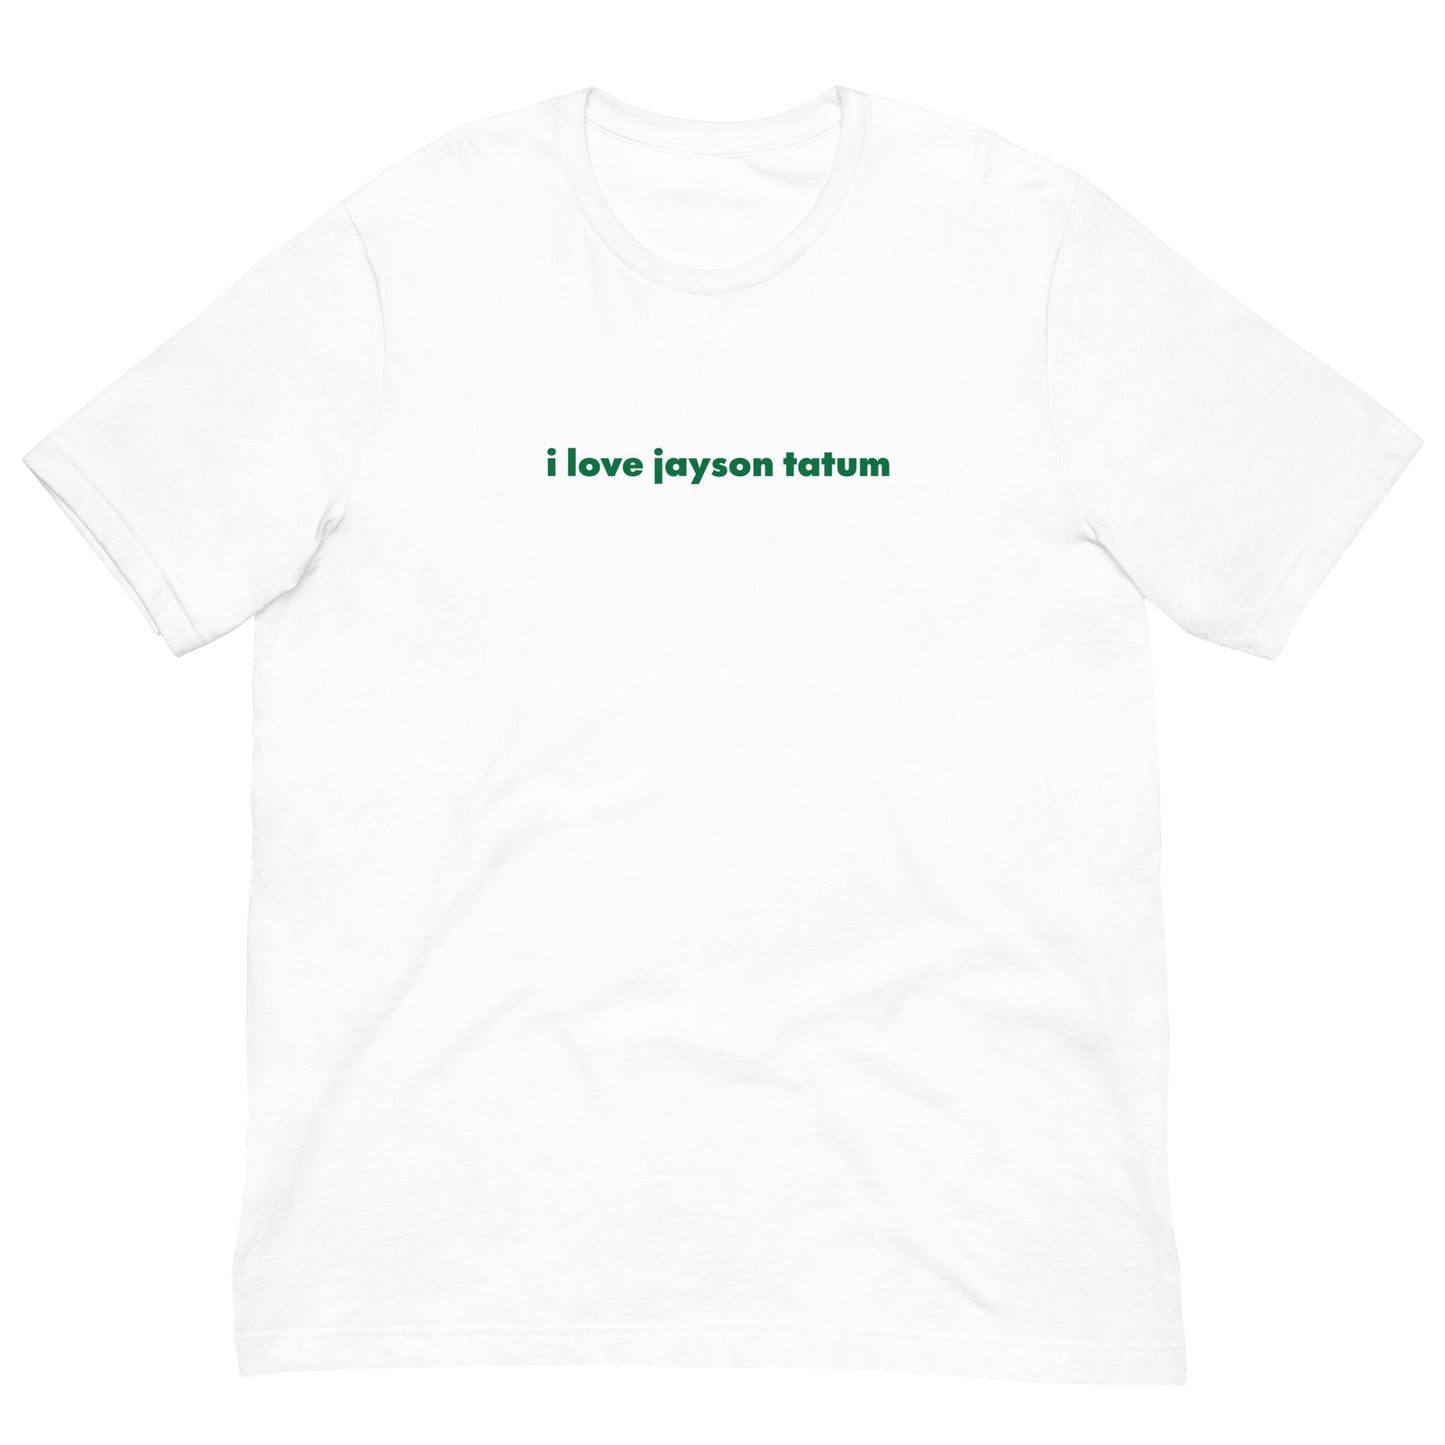 i love jayson tatum t-shirt